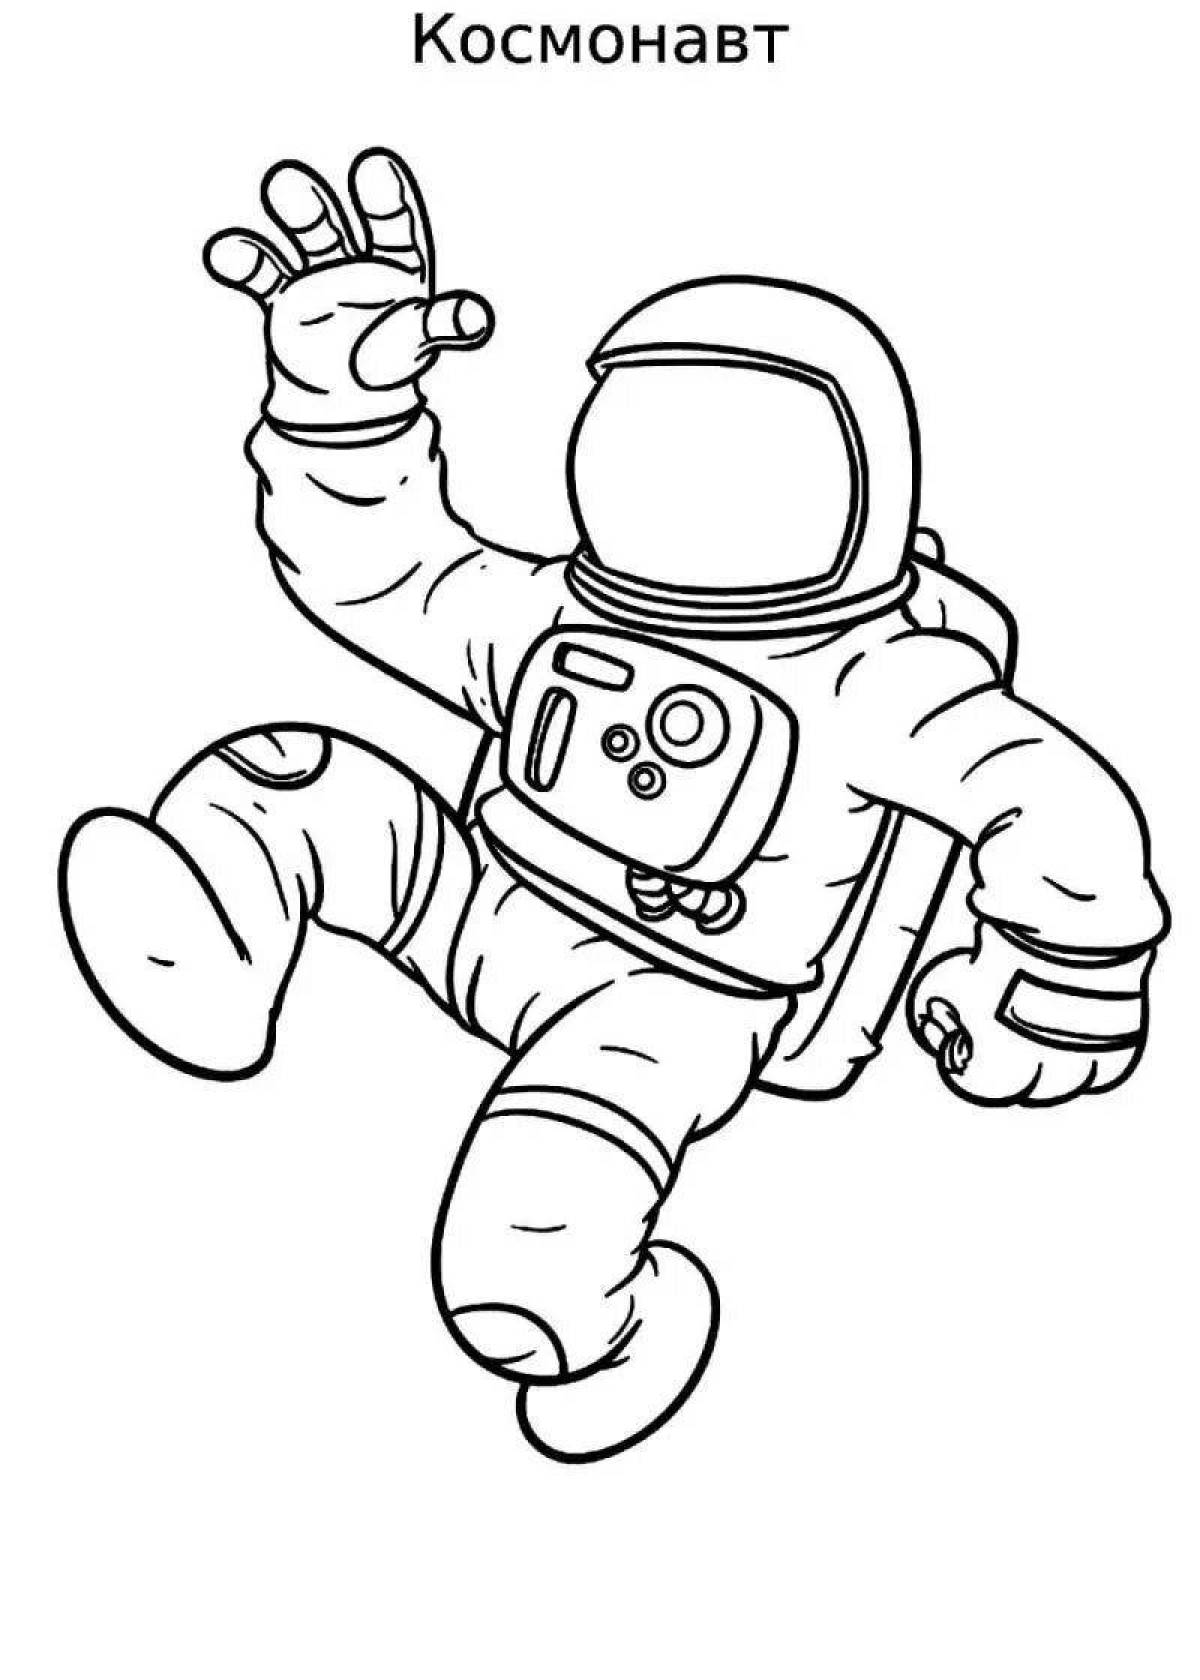 Рисунок космонавта в скафандре. Раскраска космонавт в скафандре. Раскраска Космонавта в скафандре для детей. Космонавт раскраска для детей. Космонавт рисунок для детей.